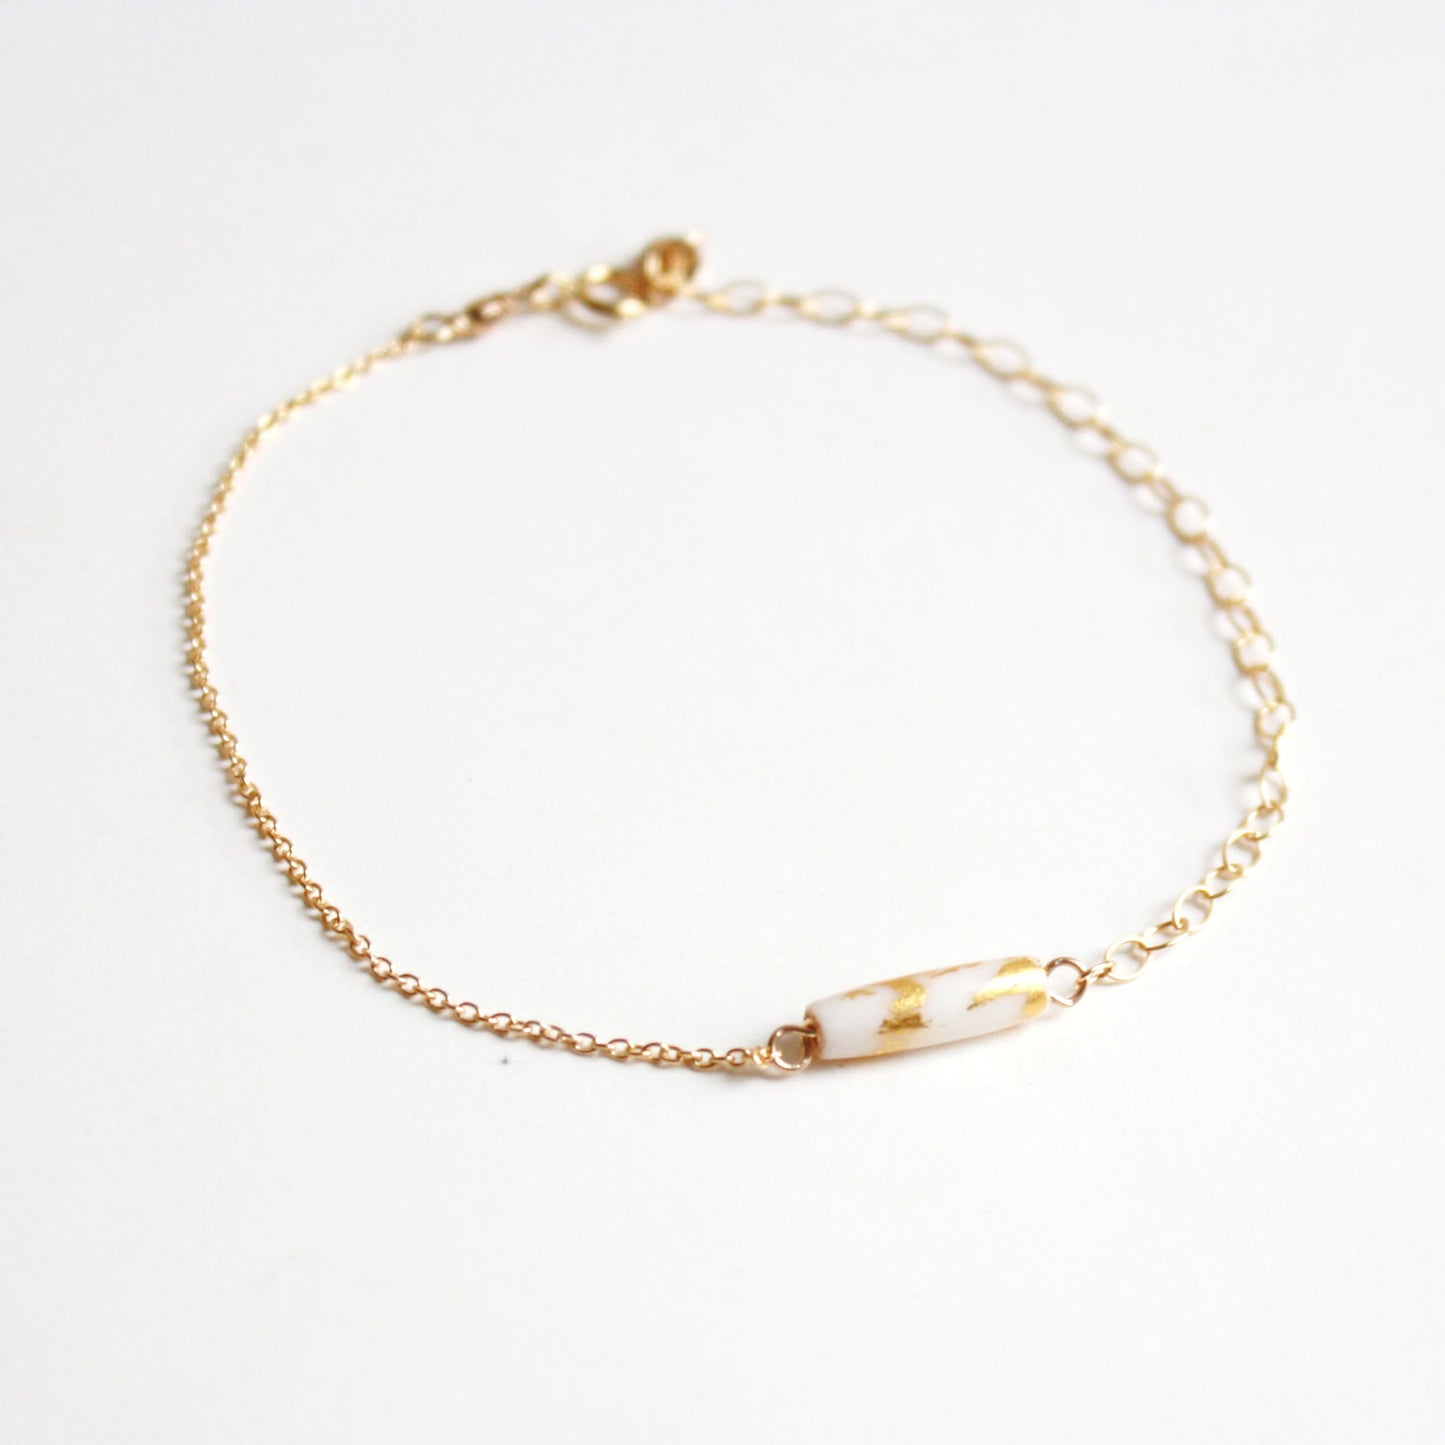 Gold Leaf Bracelet - White Tube